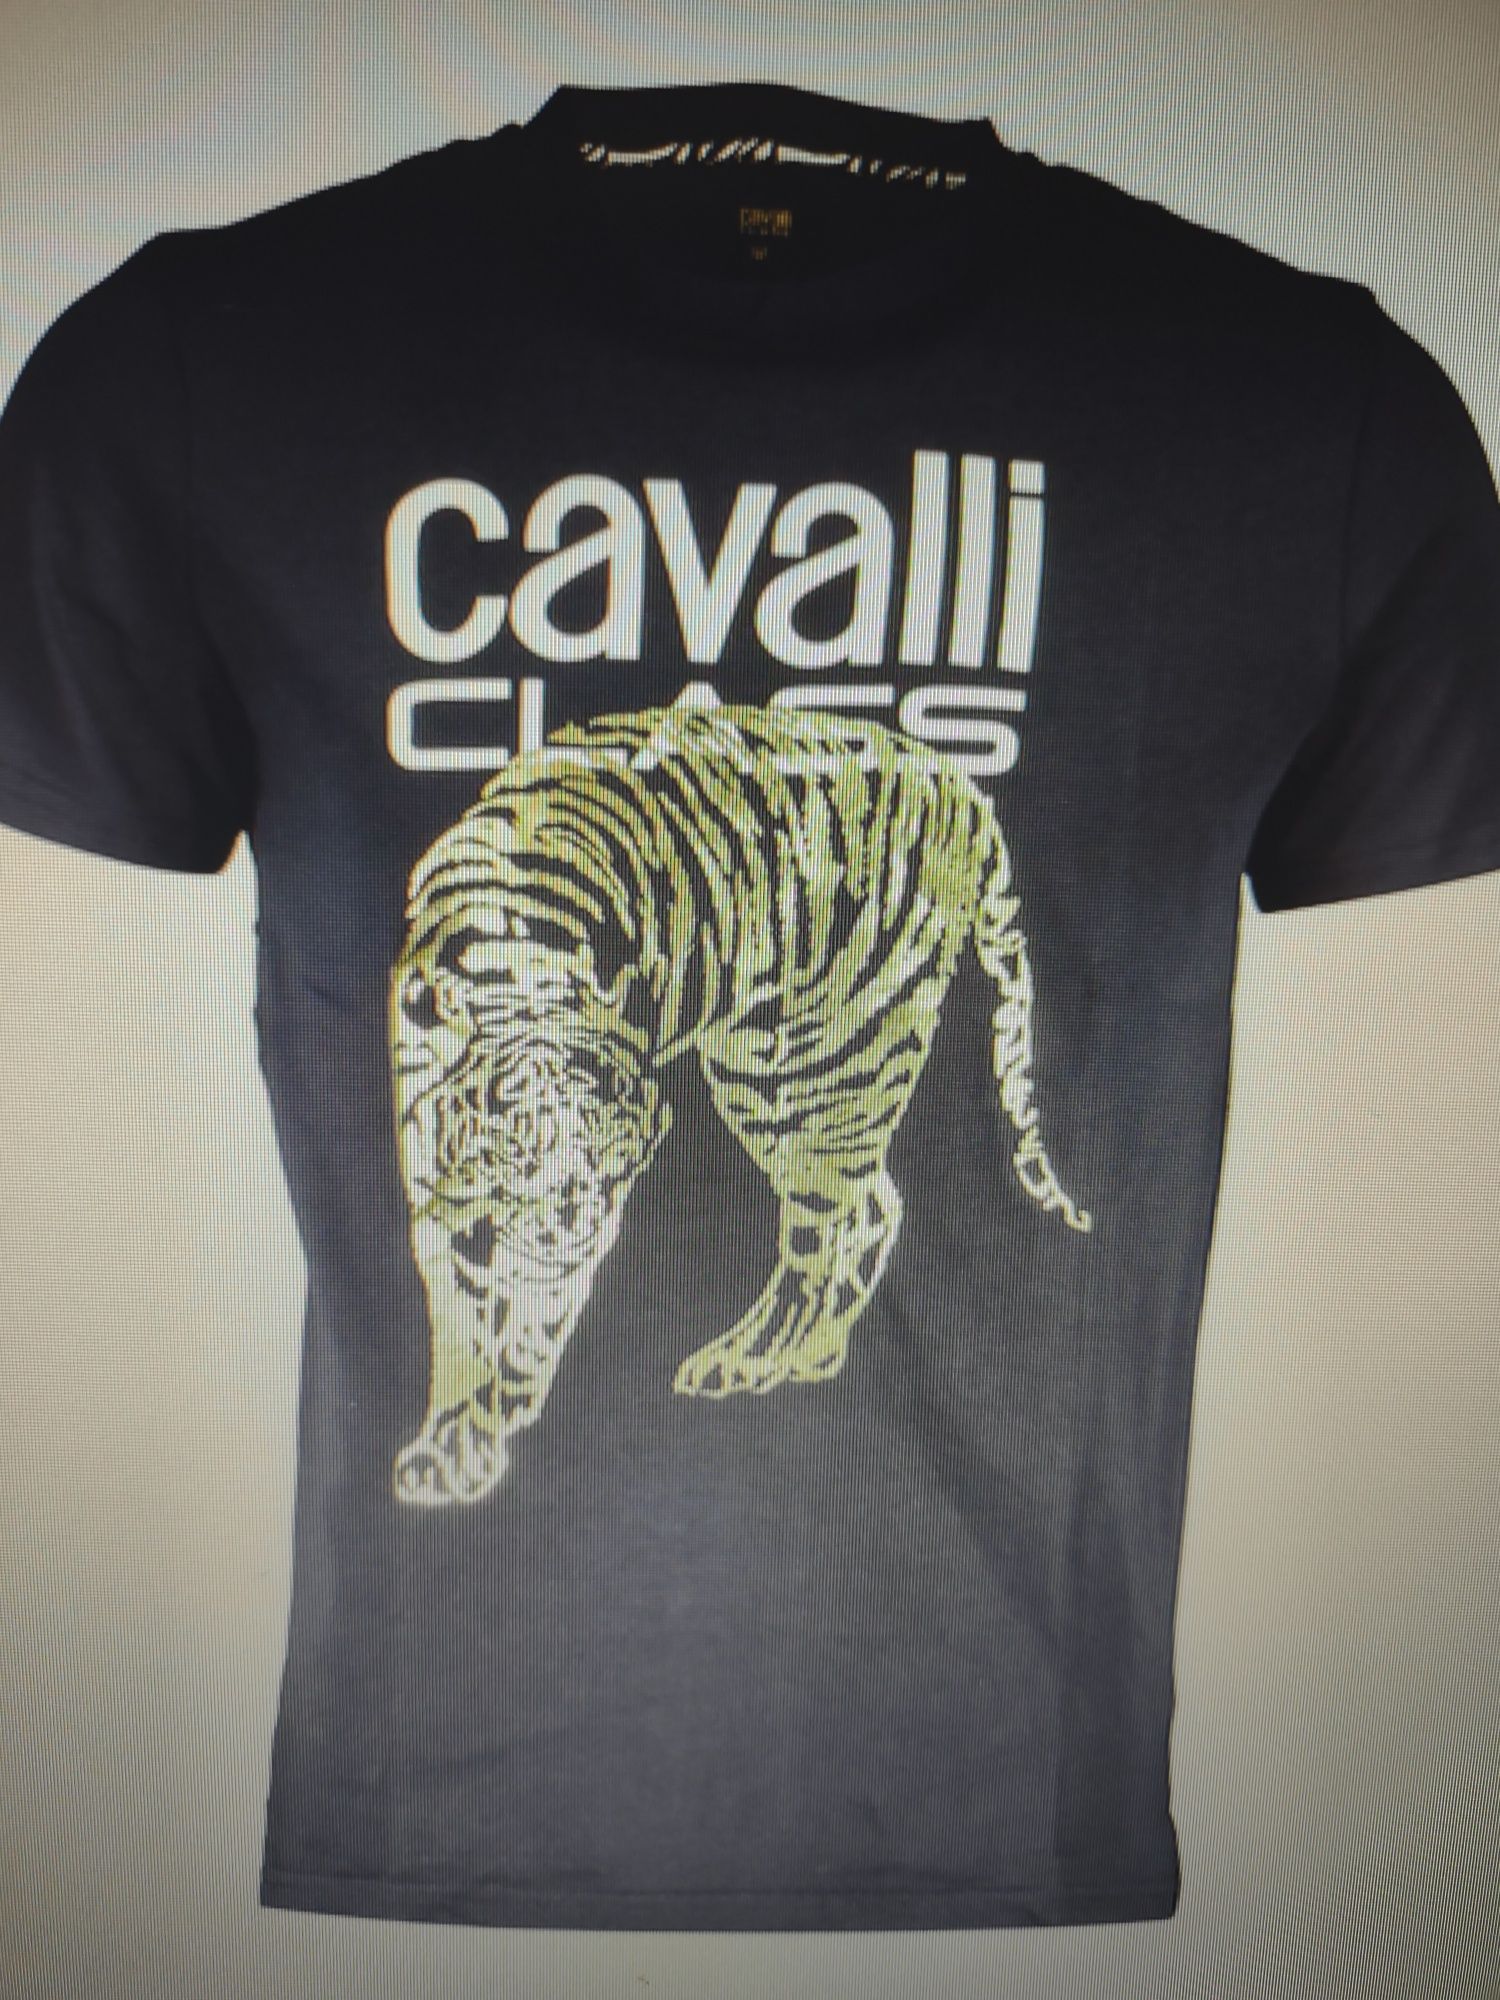 Tricouri Cavalli, 100% originale